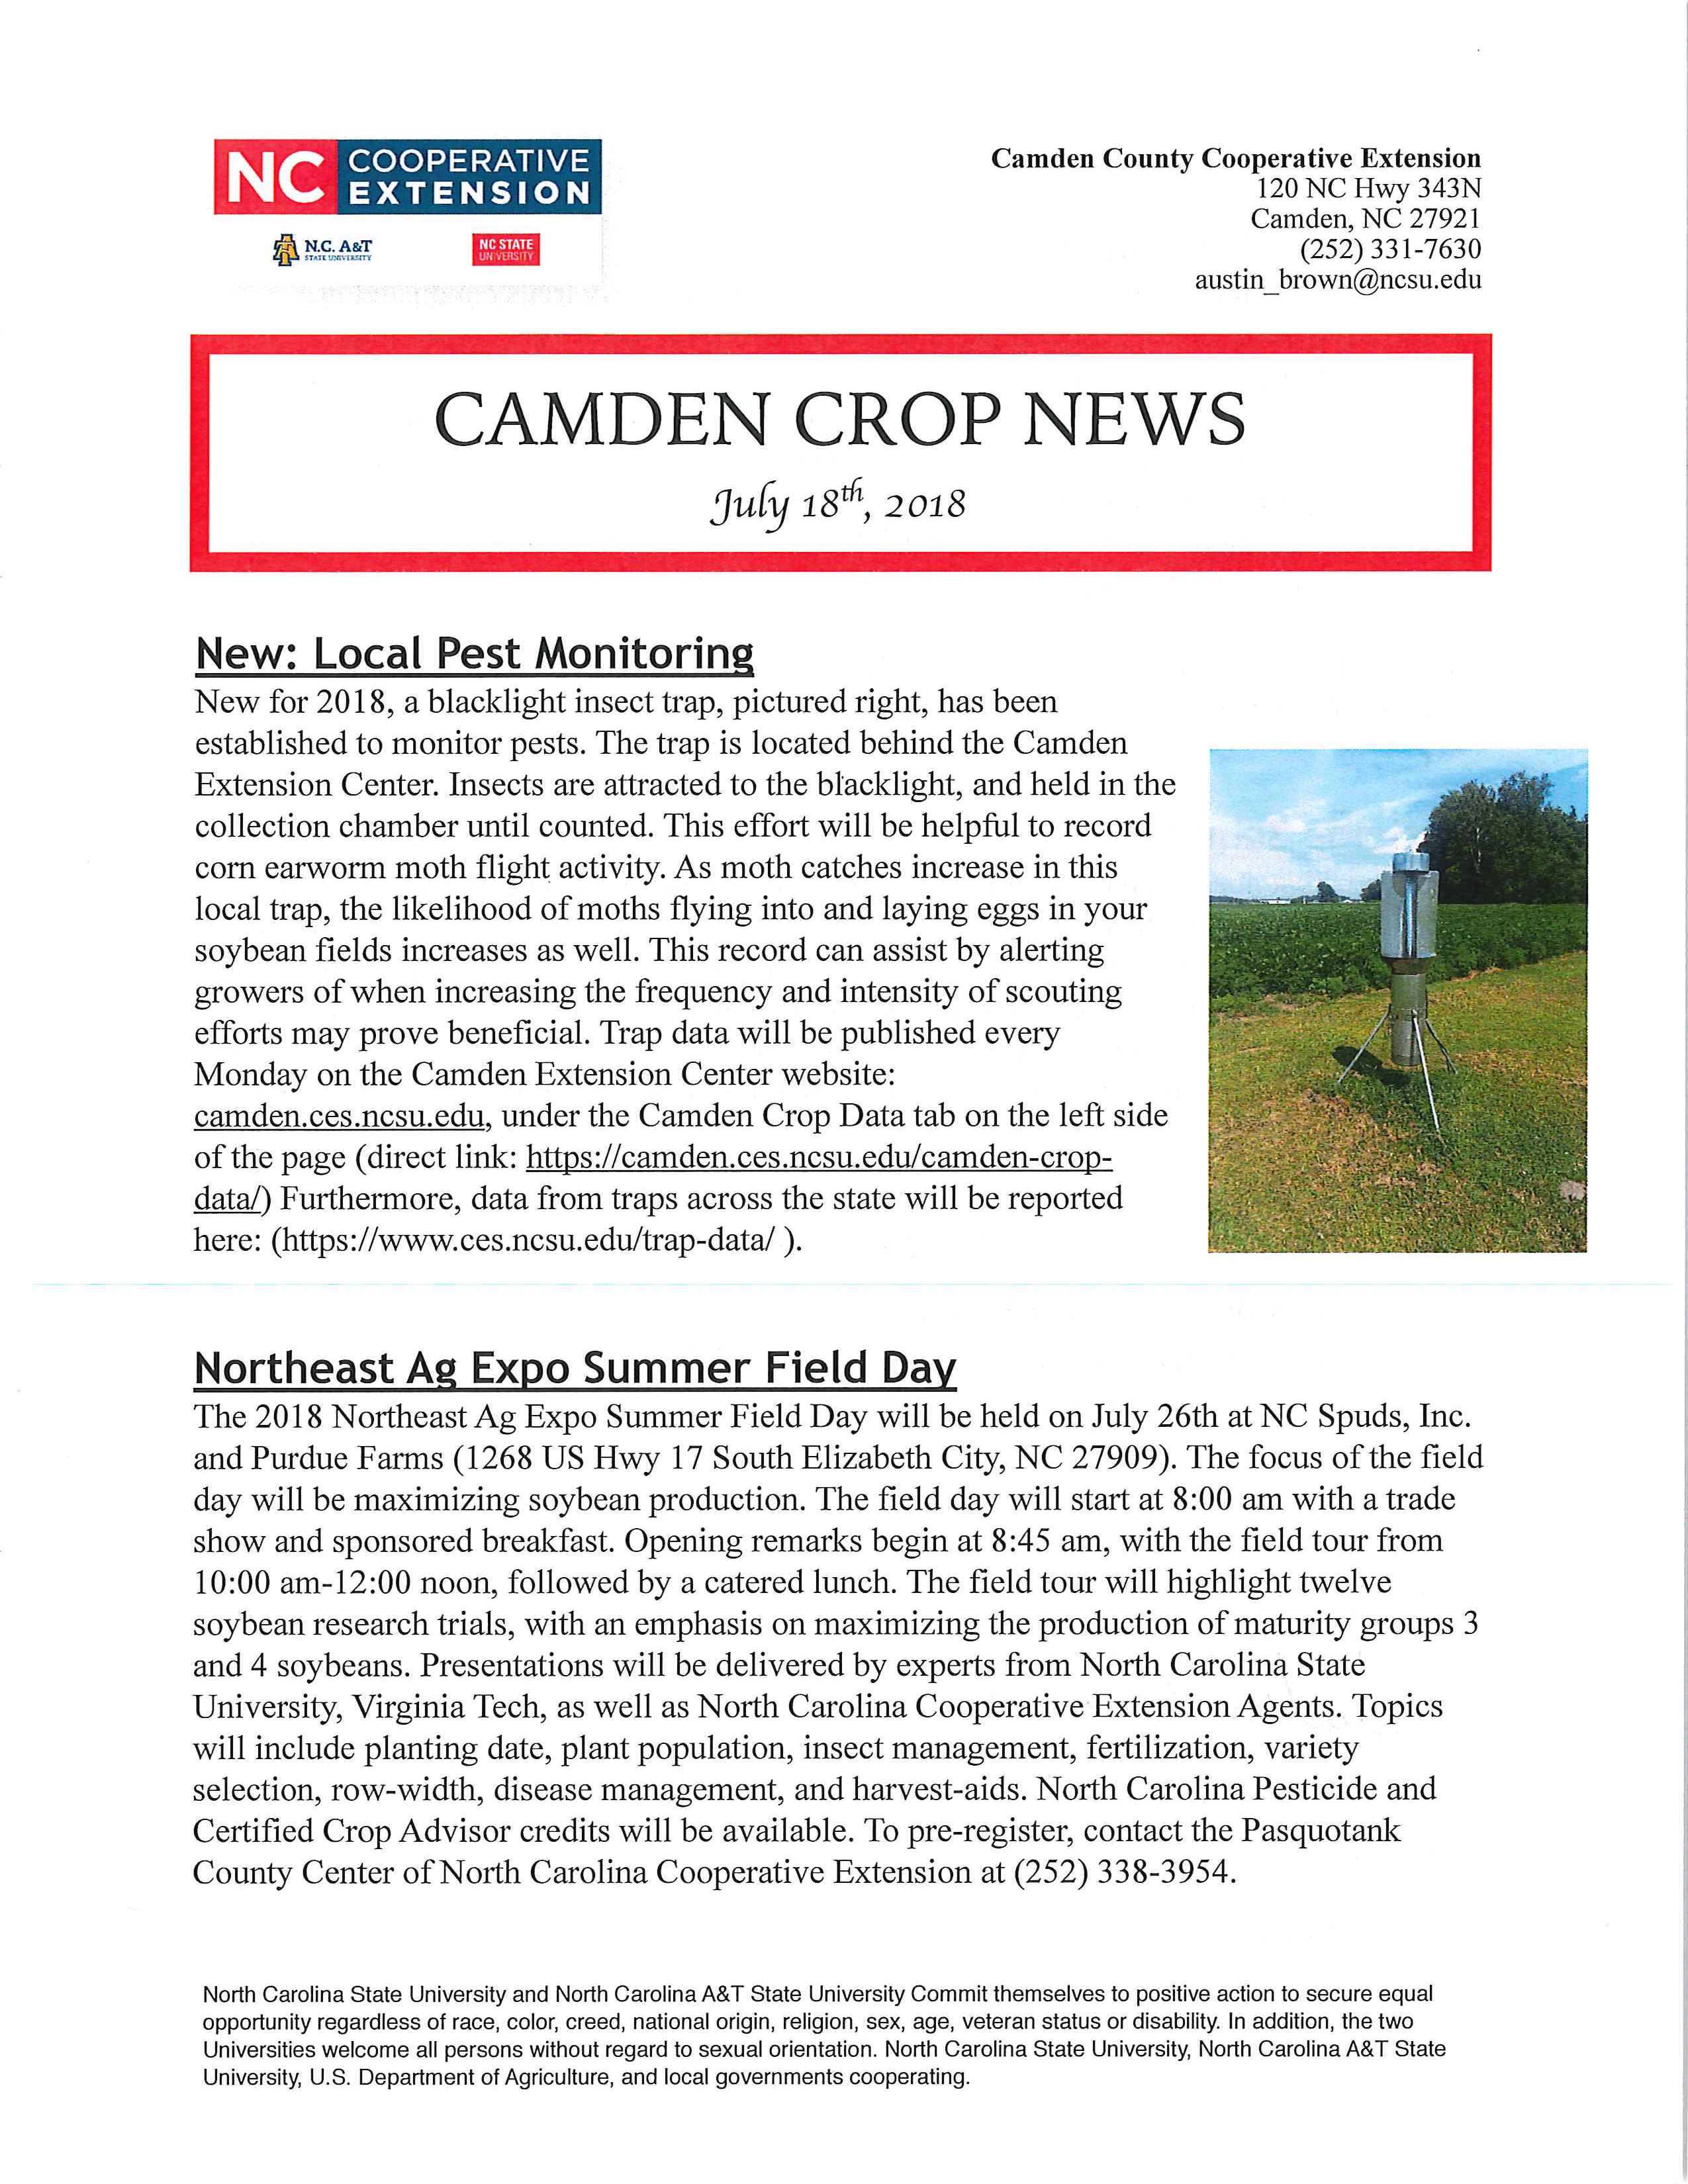 Camden Crop News flyer